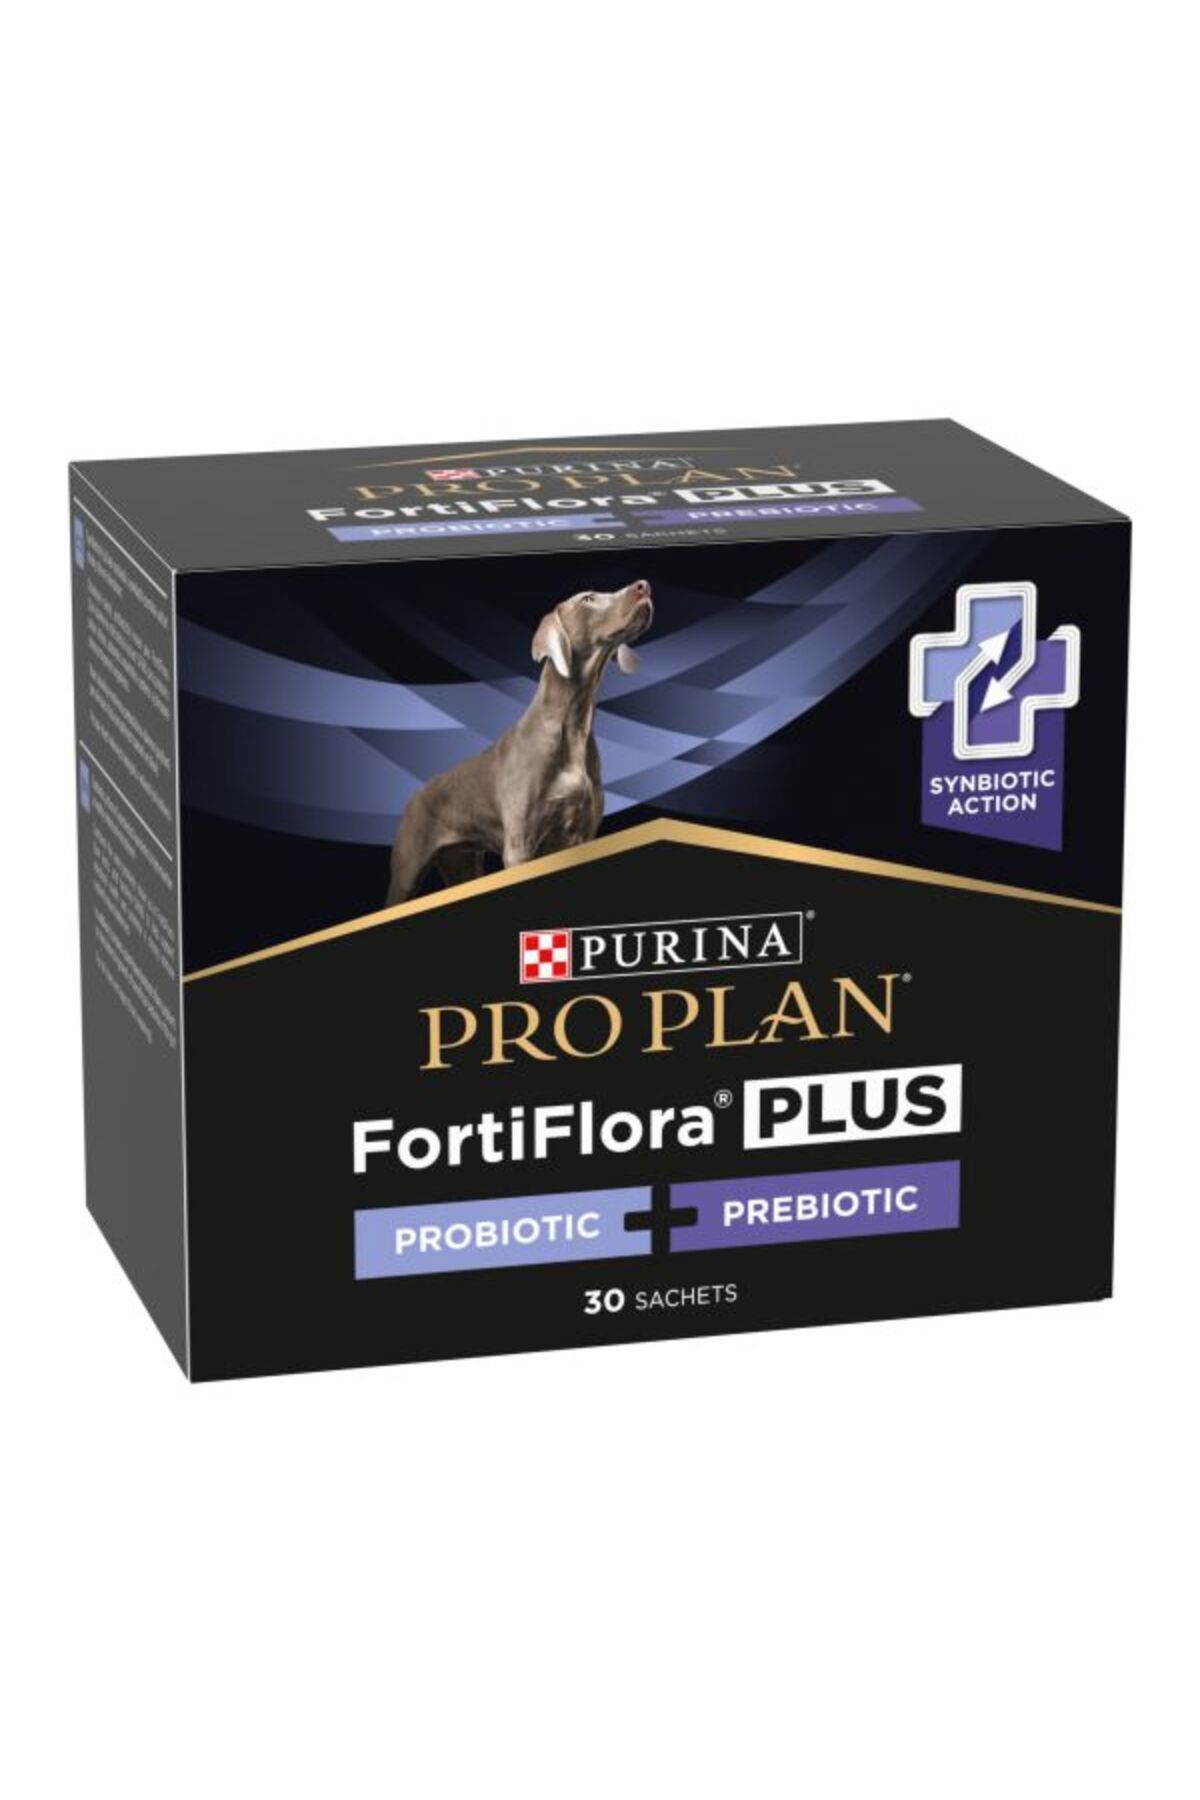 Purina Proplan Fortiflora Köpekler Için Probiyotik-prebiotik Takviyesi 10 Şase (10 X2 GR)